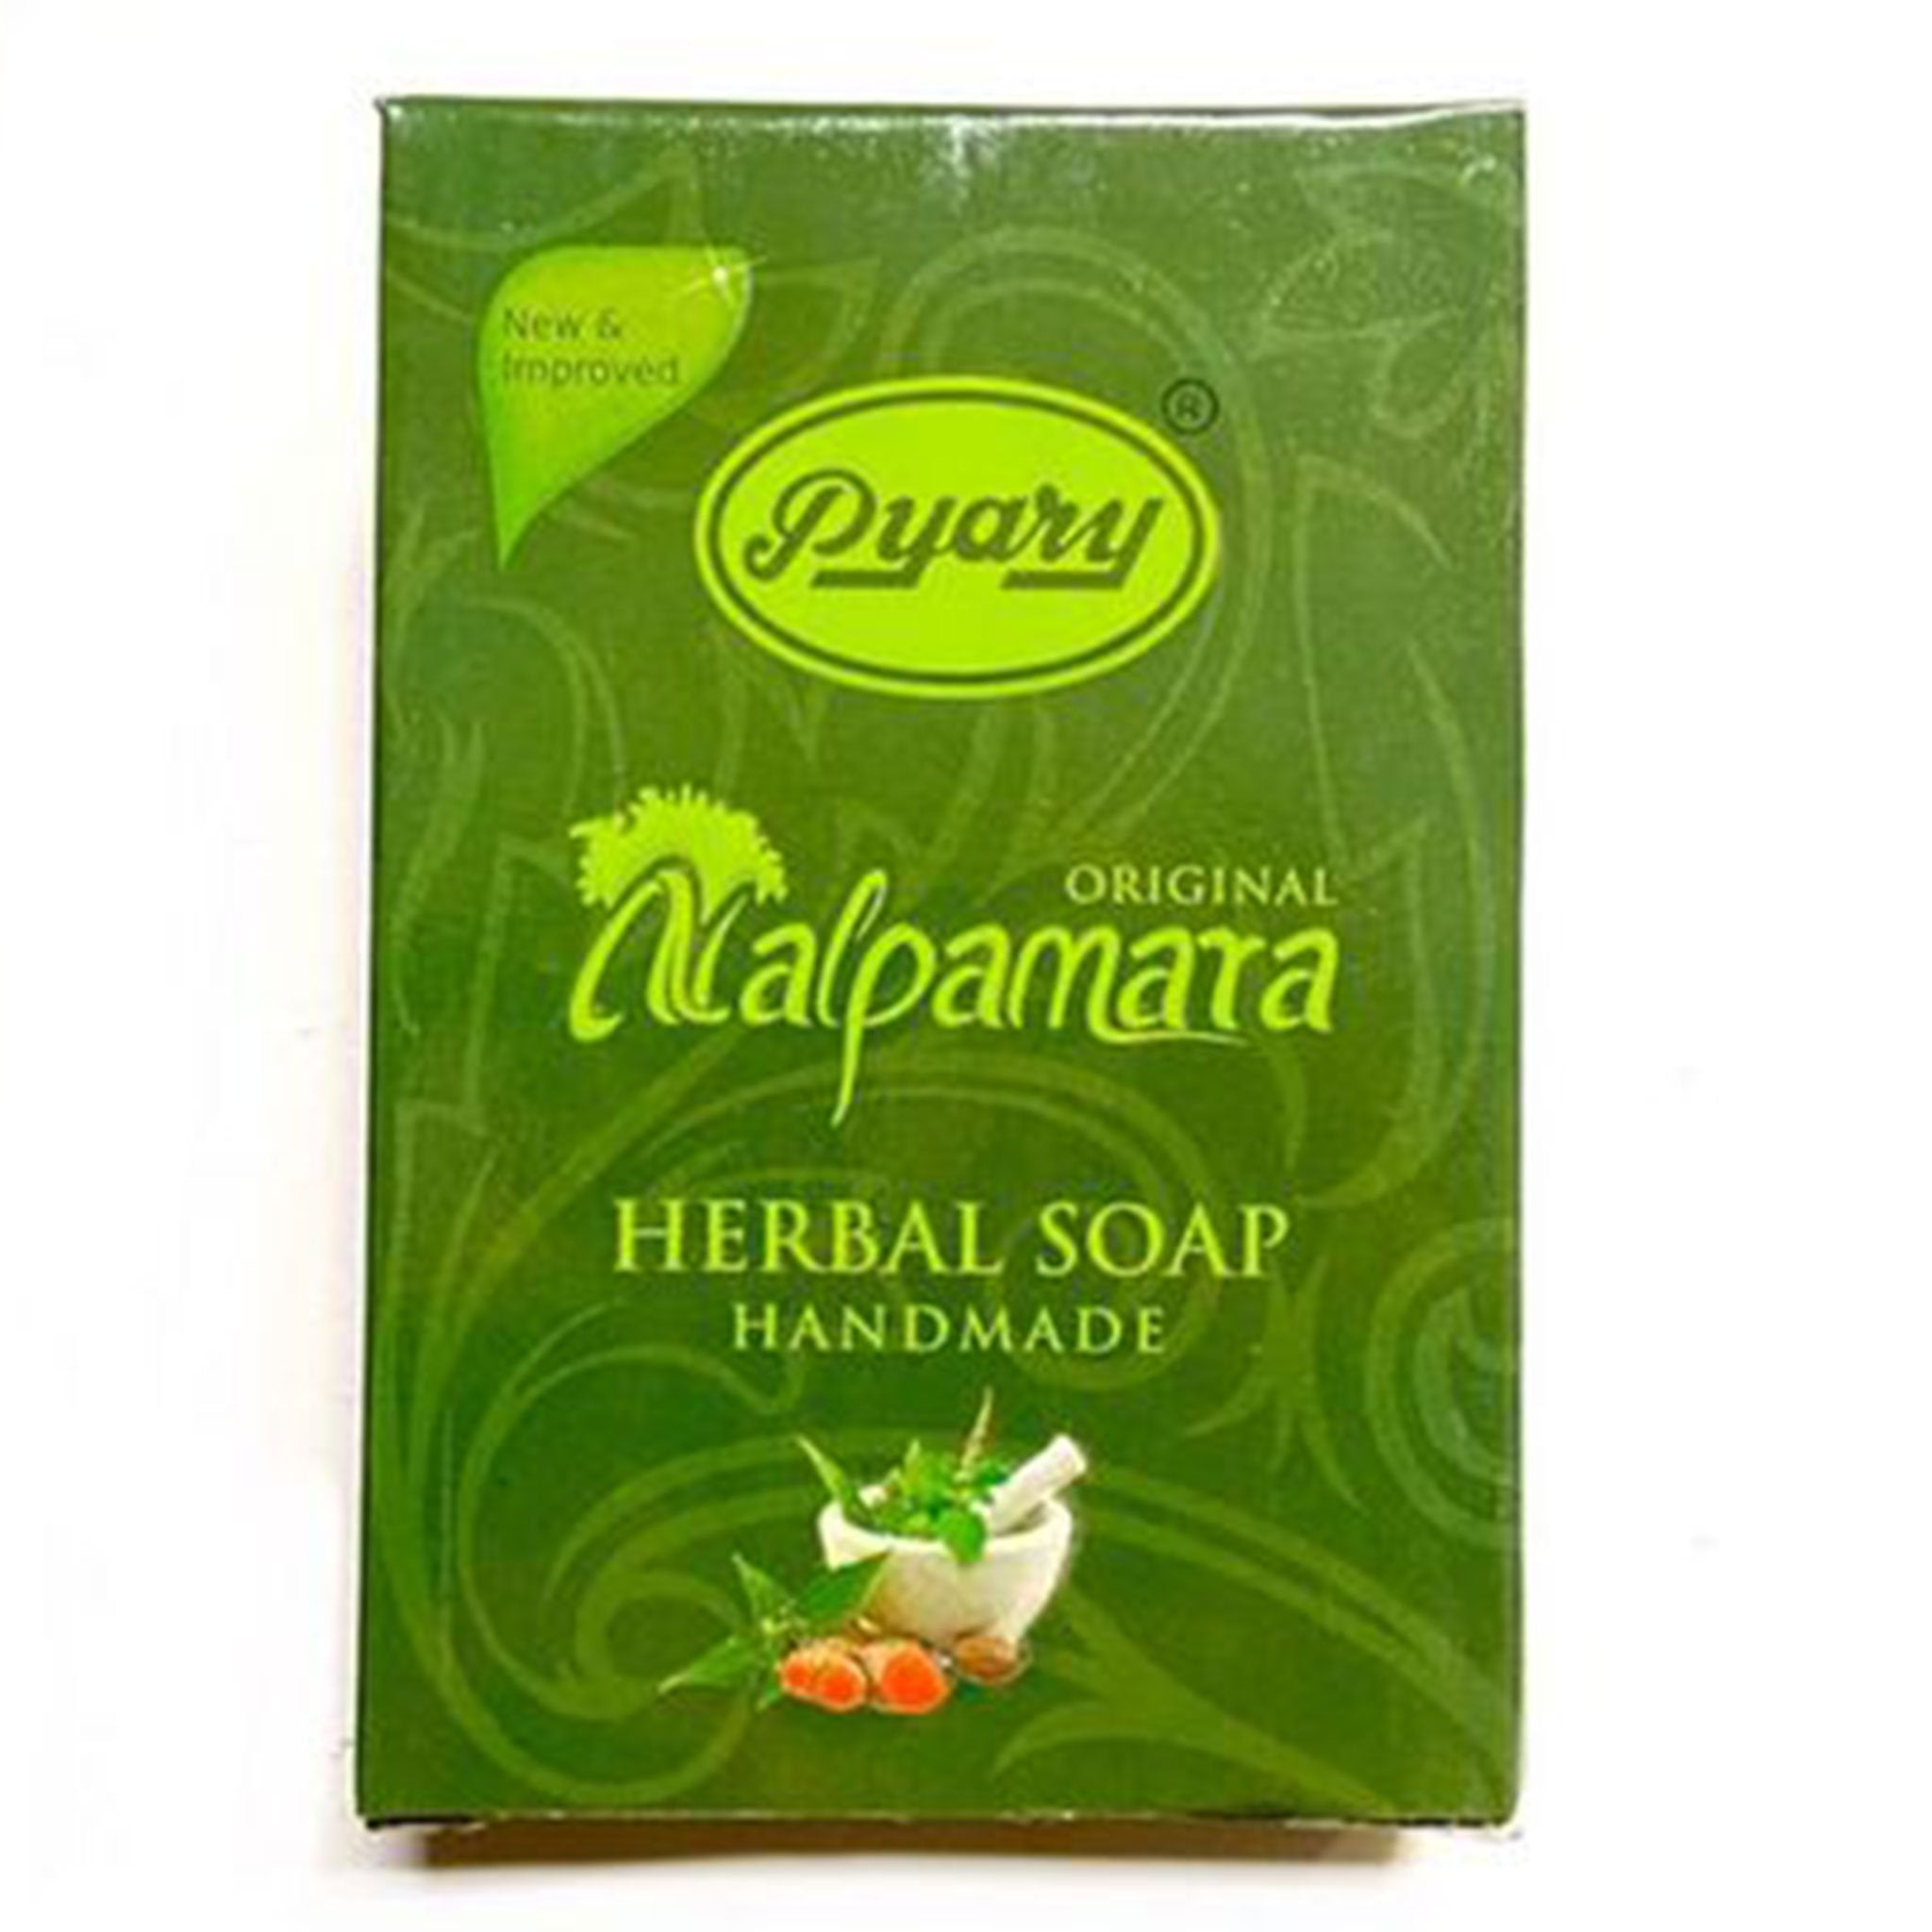 Pyary Nalpamara Herbal Soap 75g